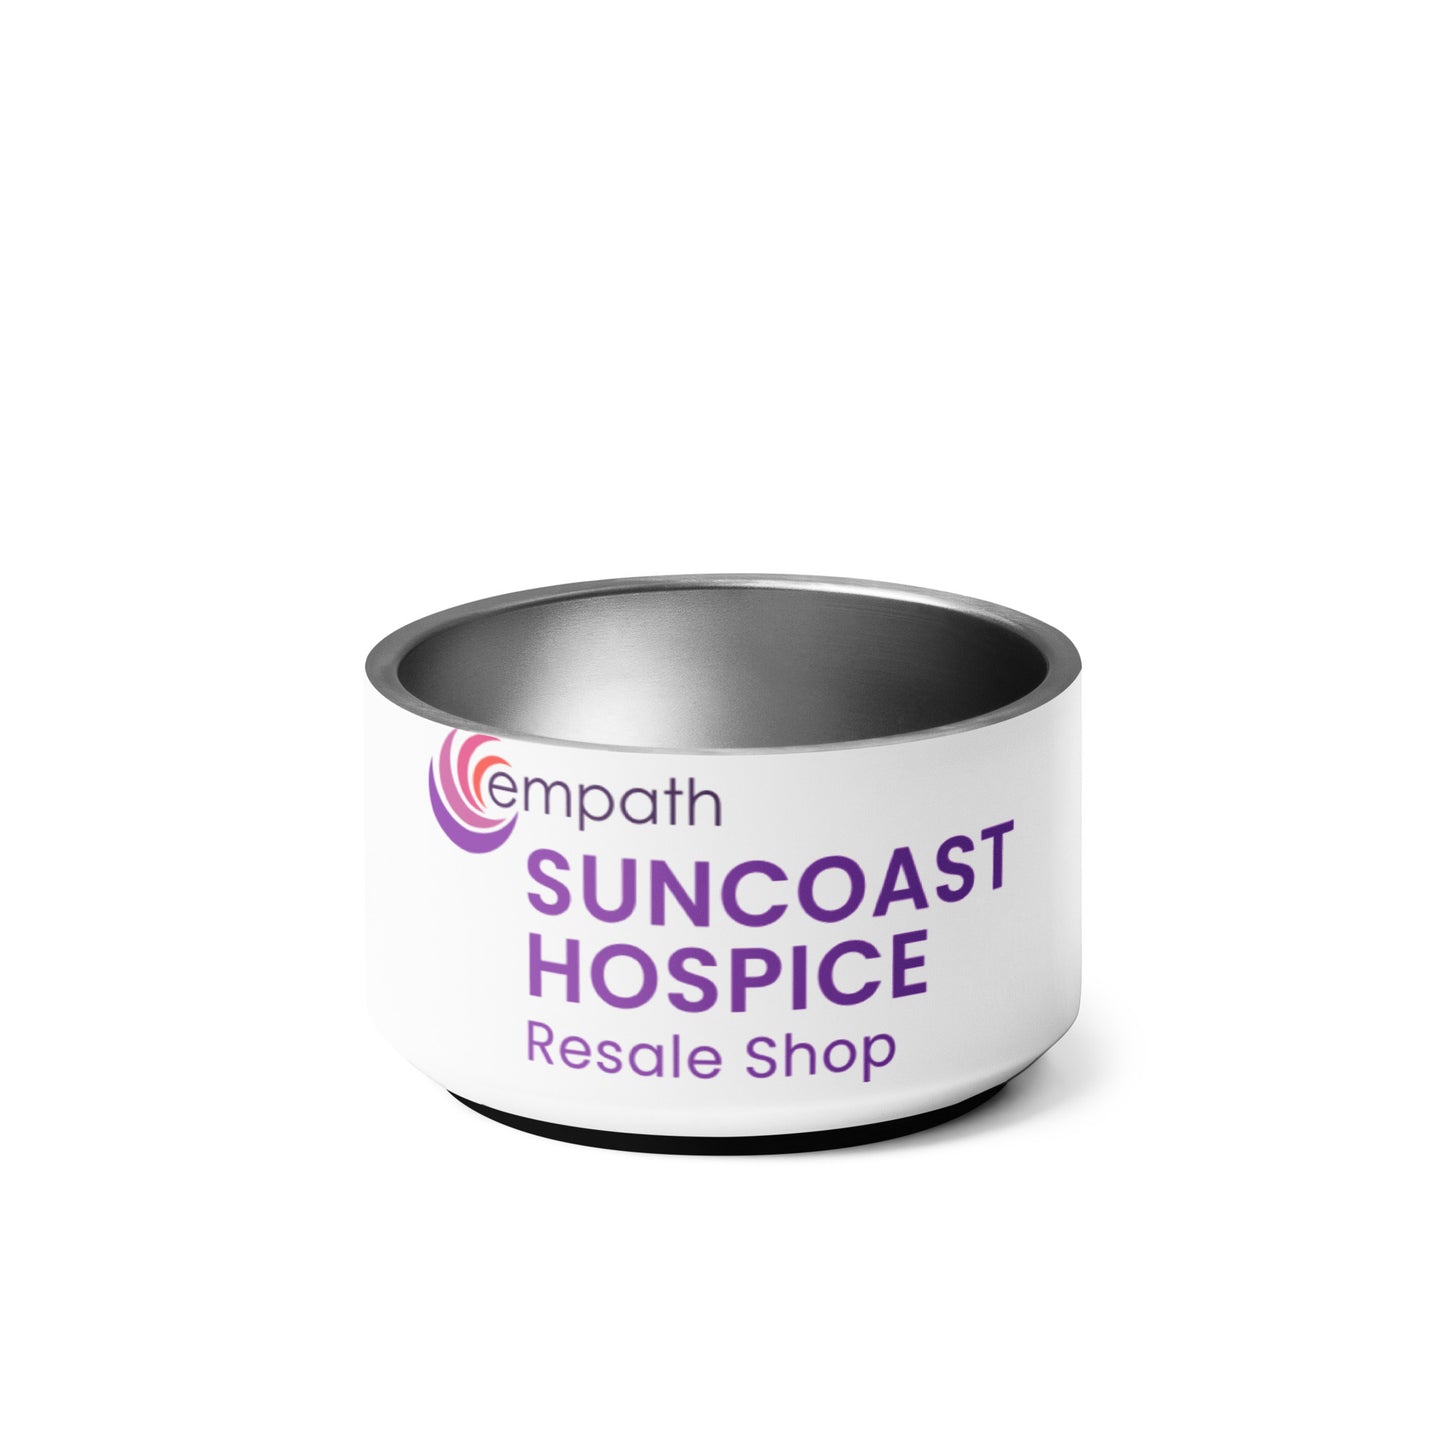 Pet bowl - Suncoast Hospice Resale Shop